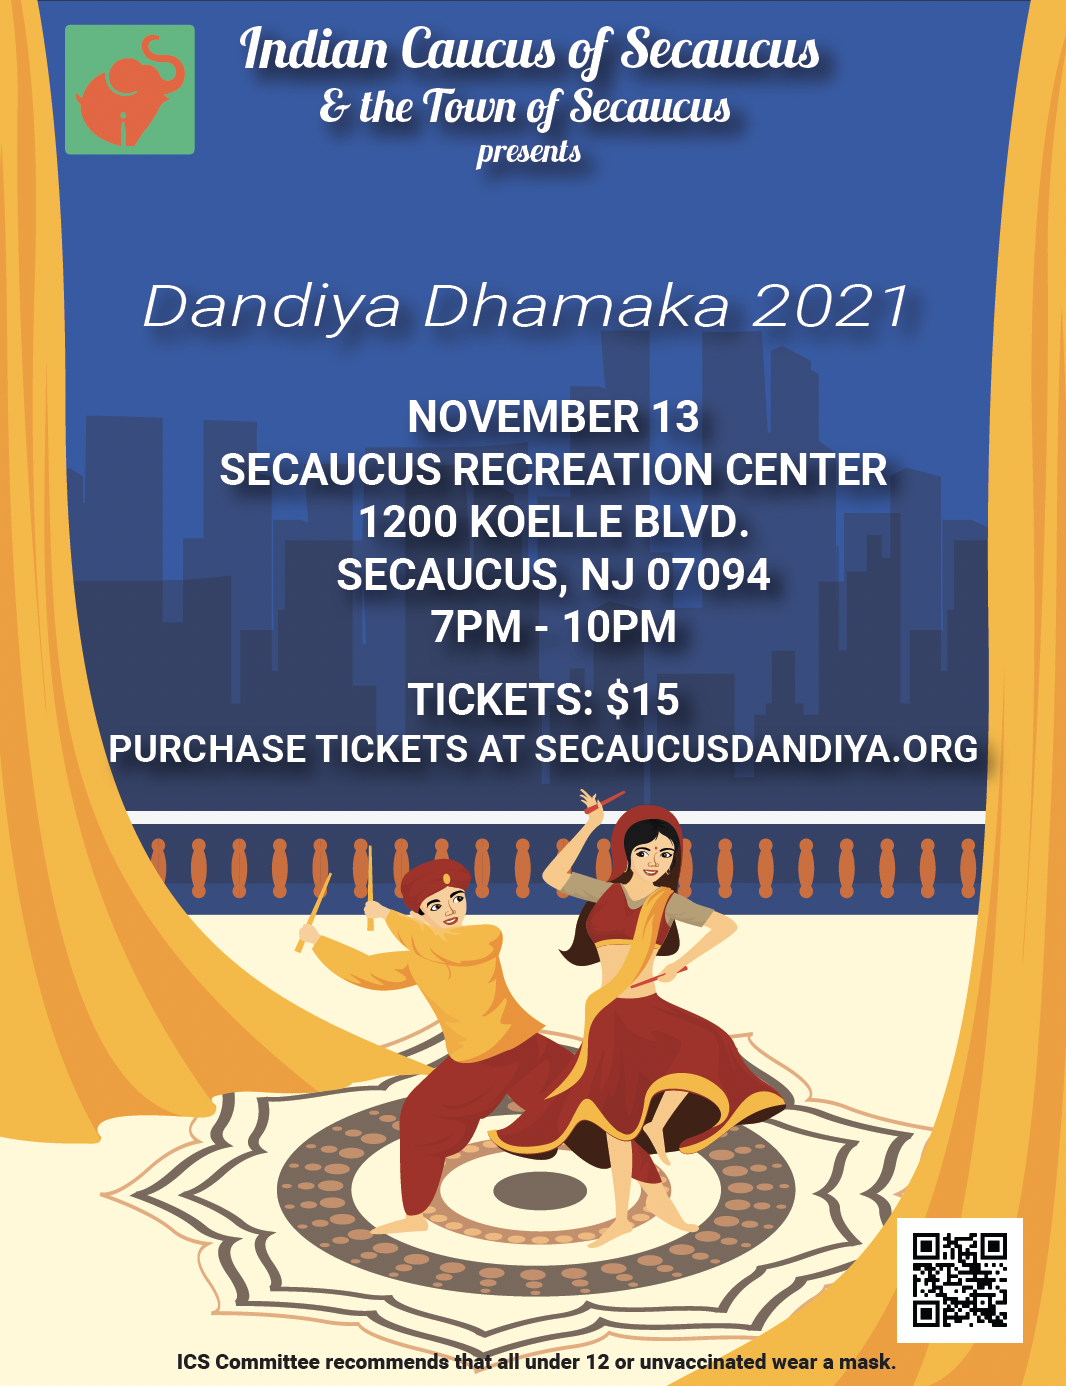 Dandiya Dhamaka flyer